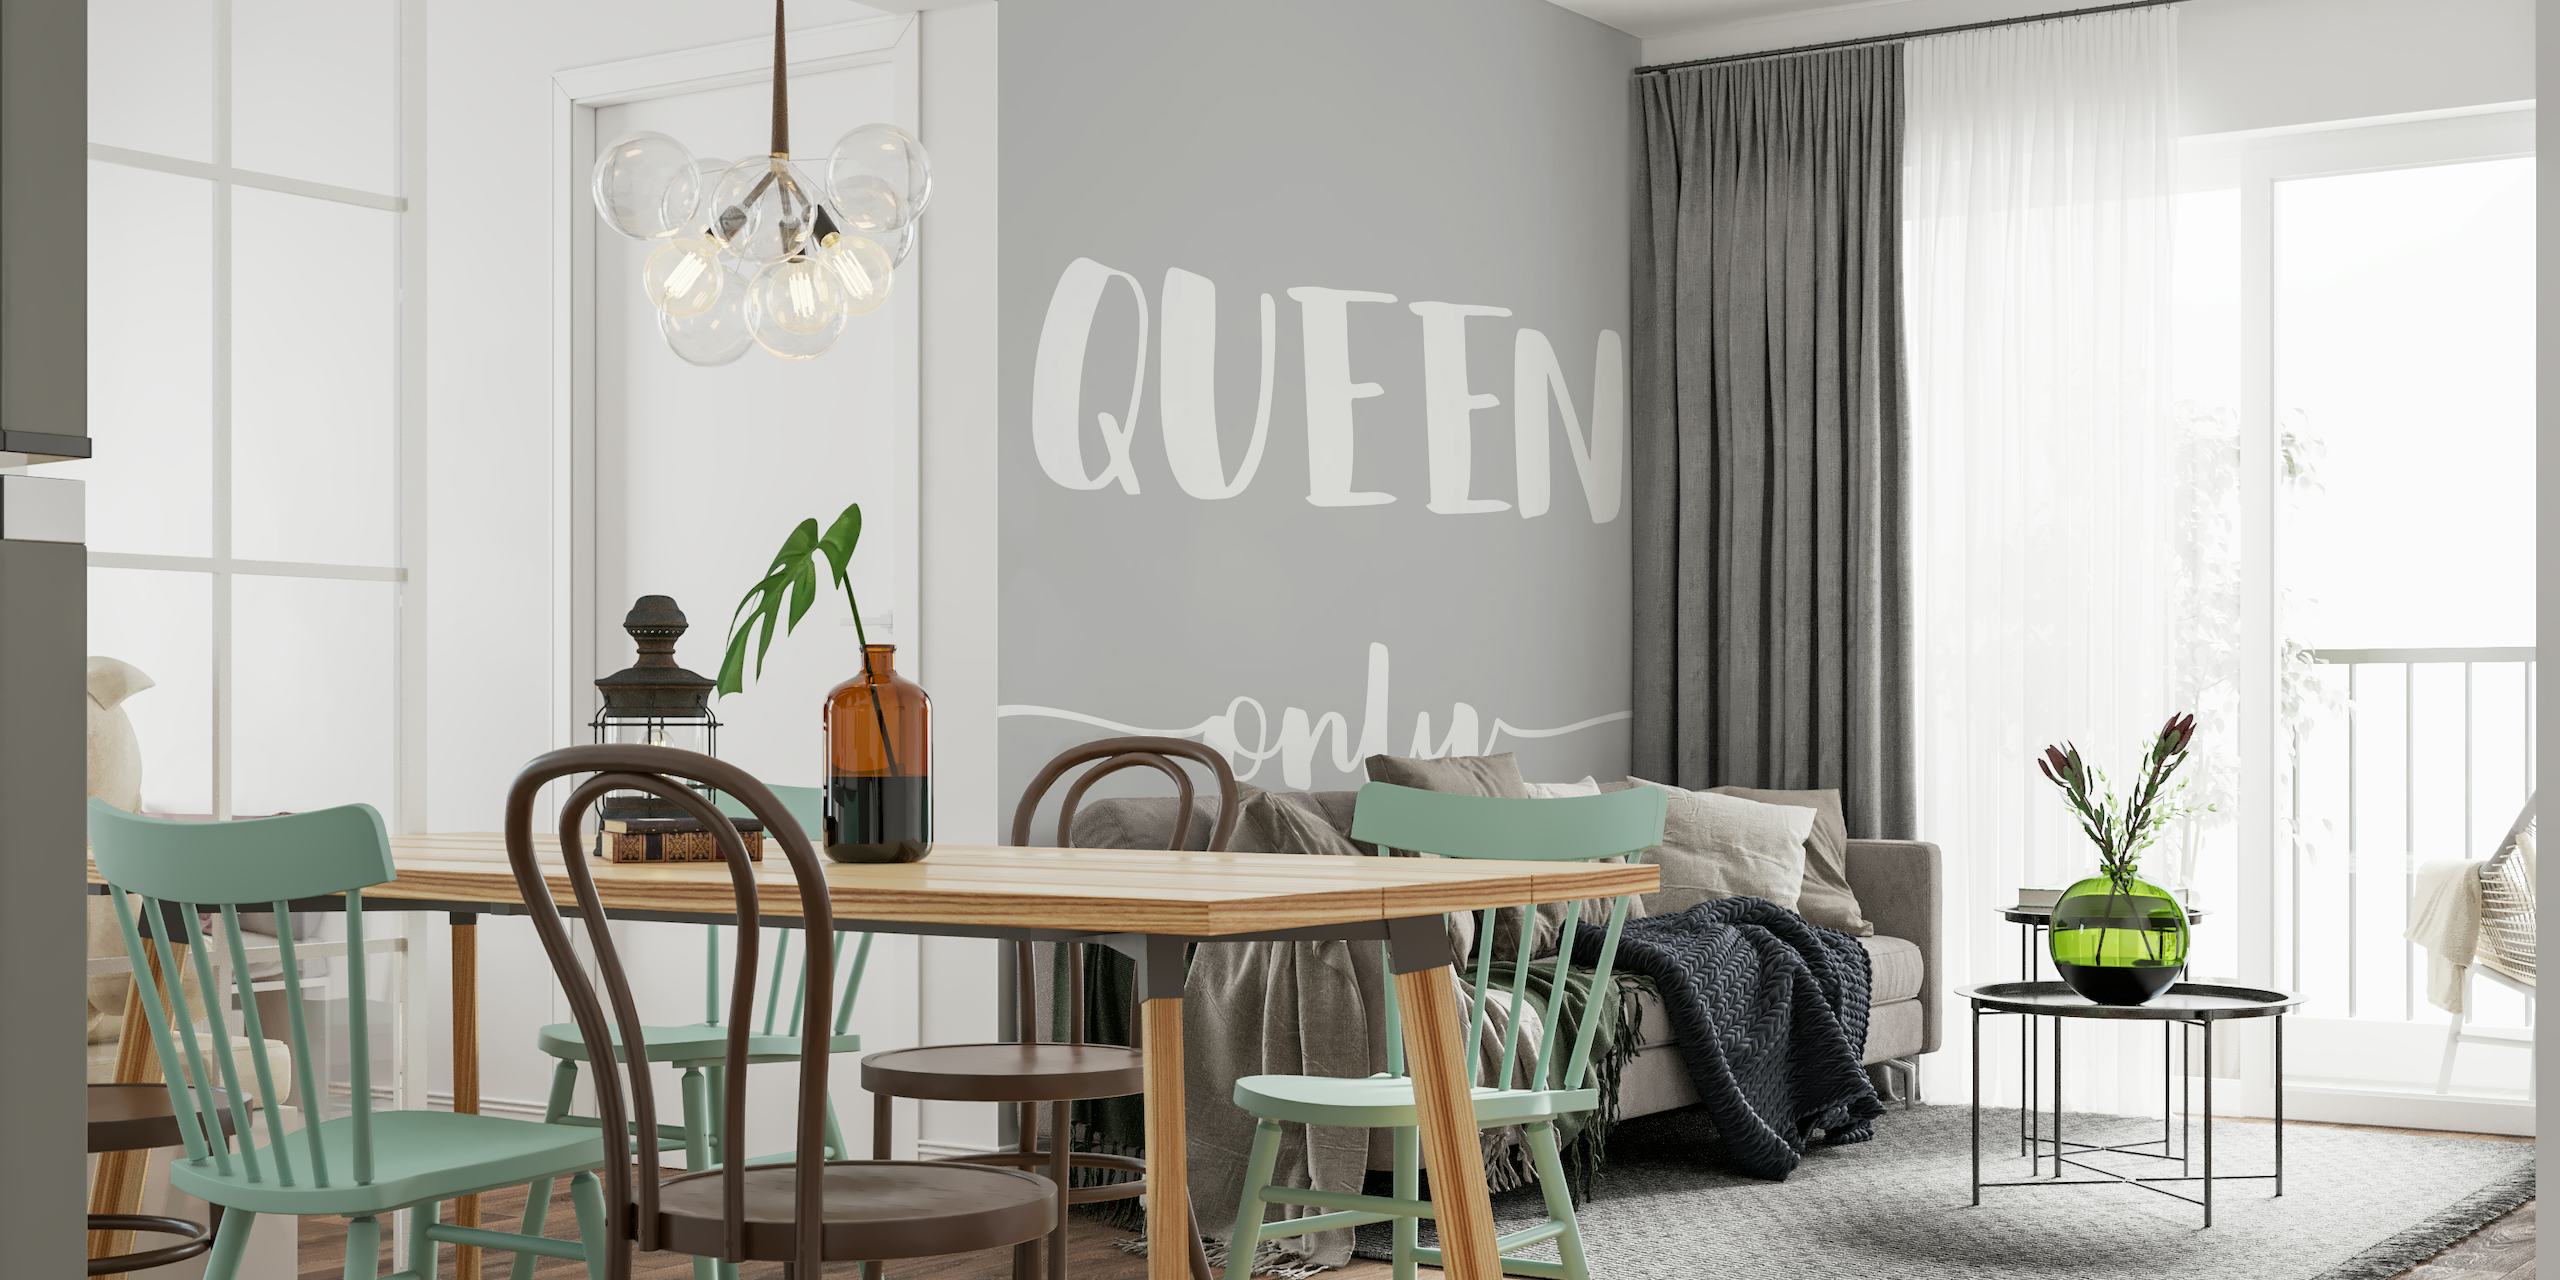 Fotomural minimalista con el texto "Queen Only" en gris y blanco